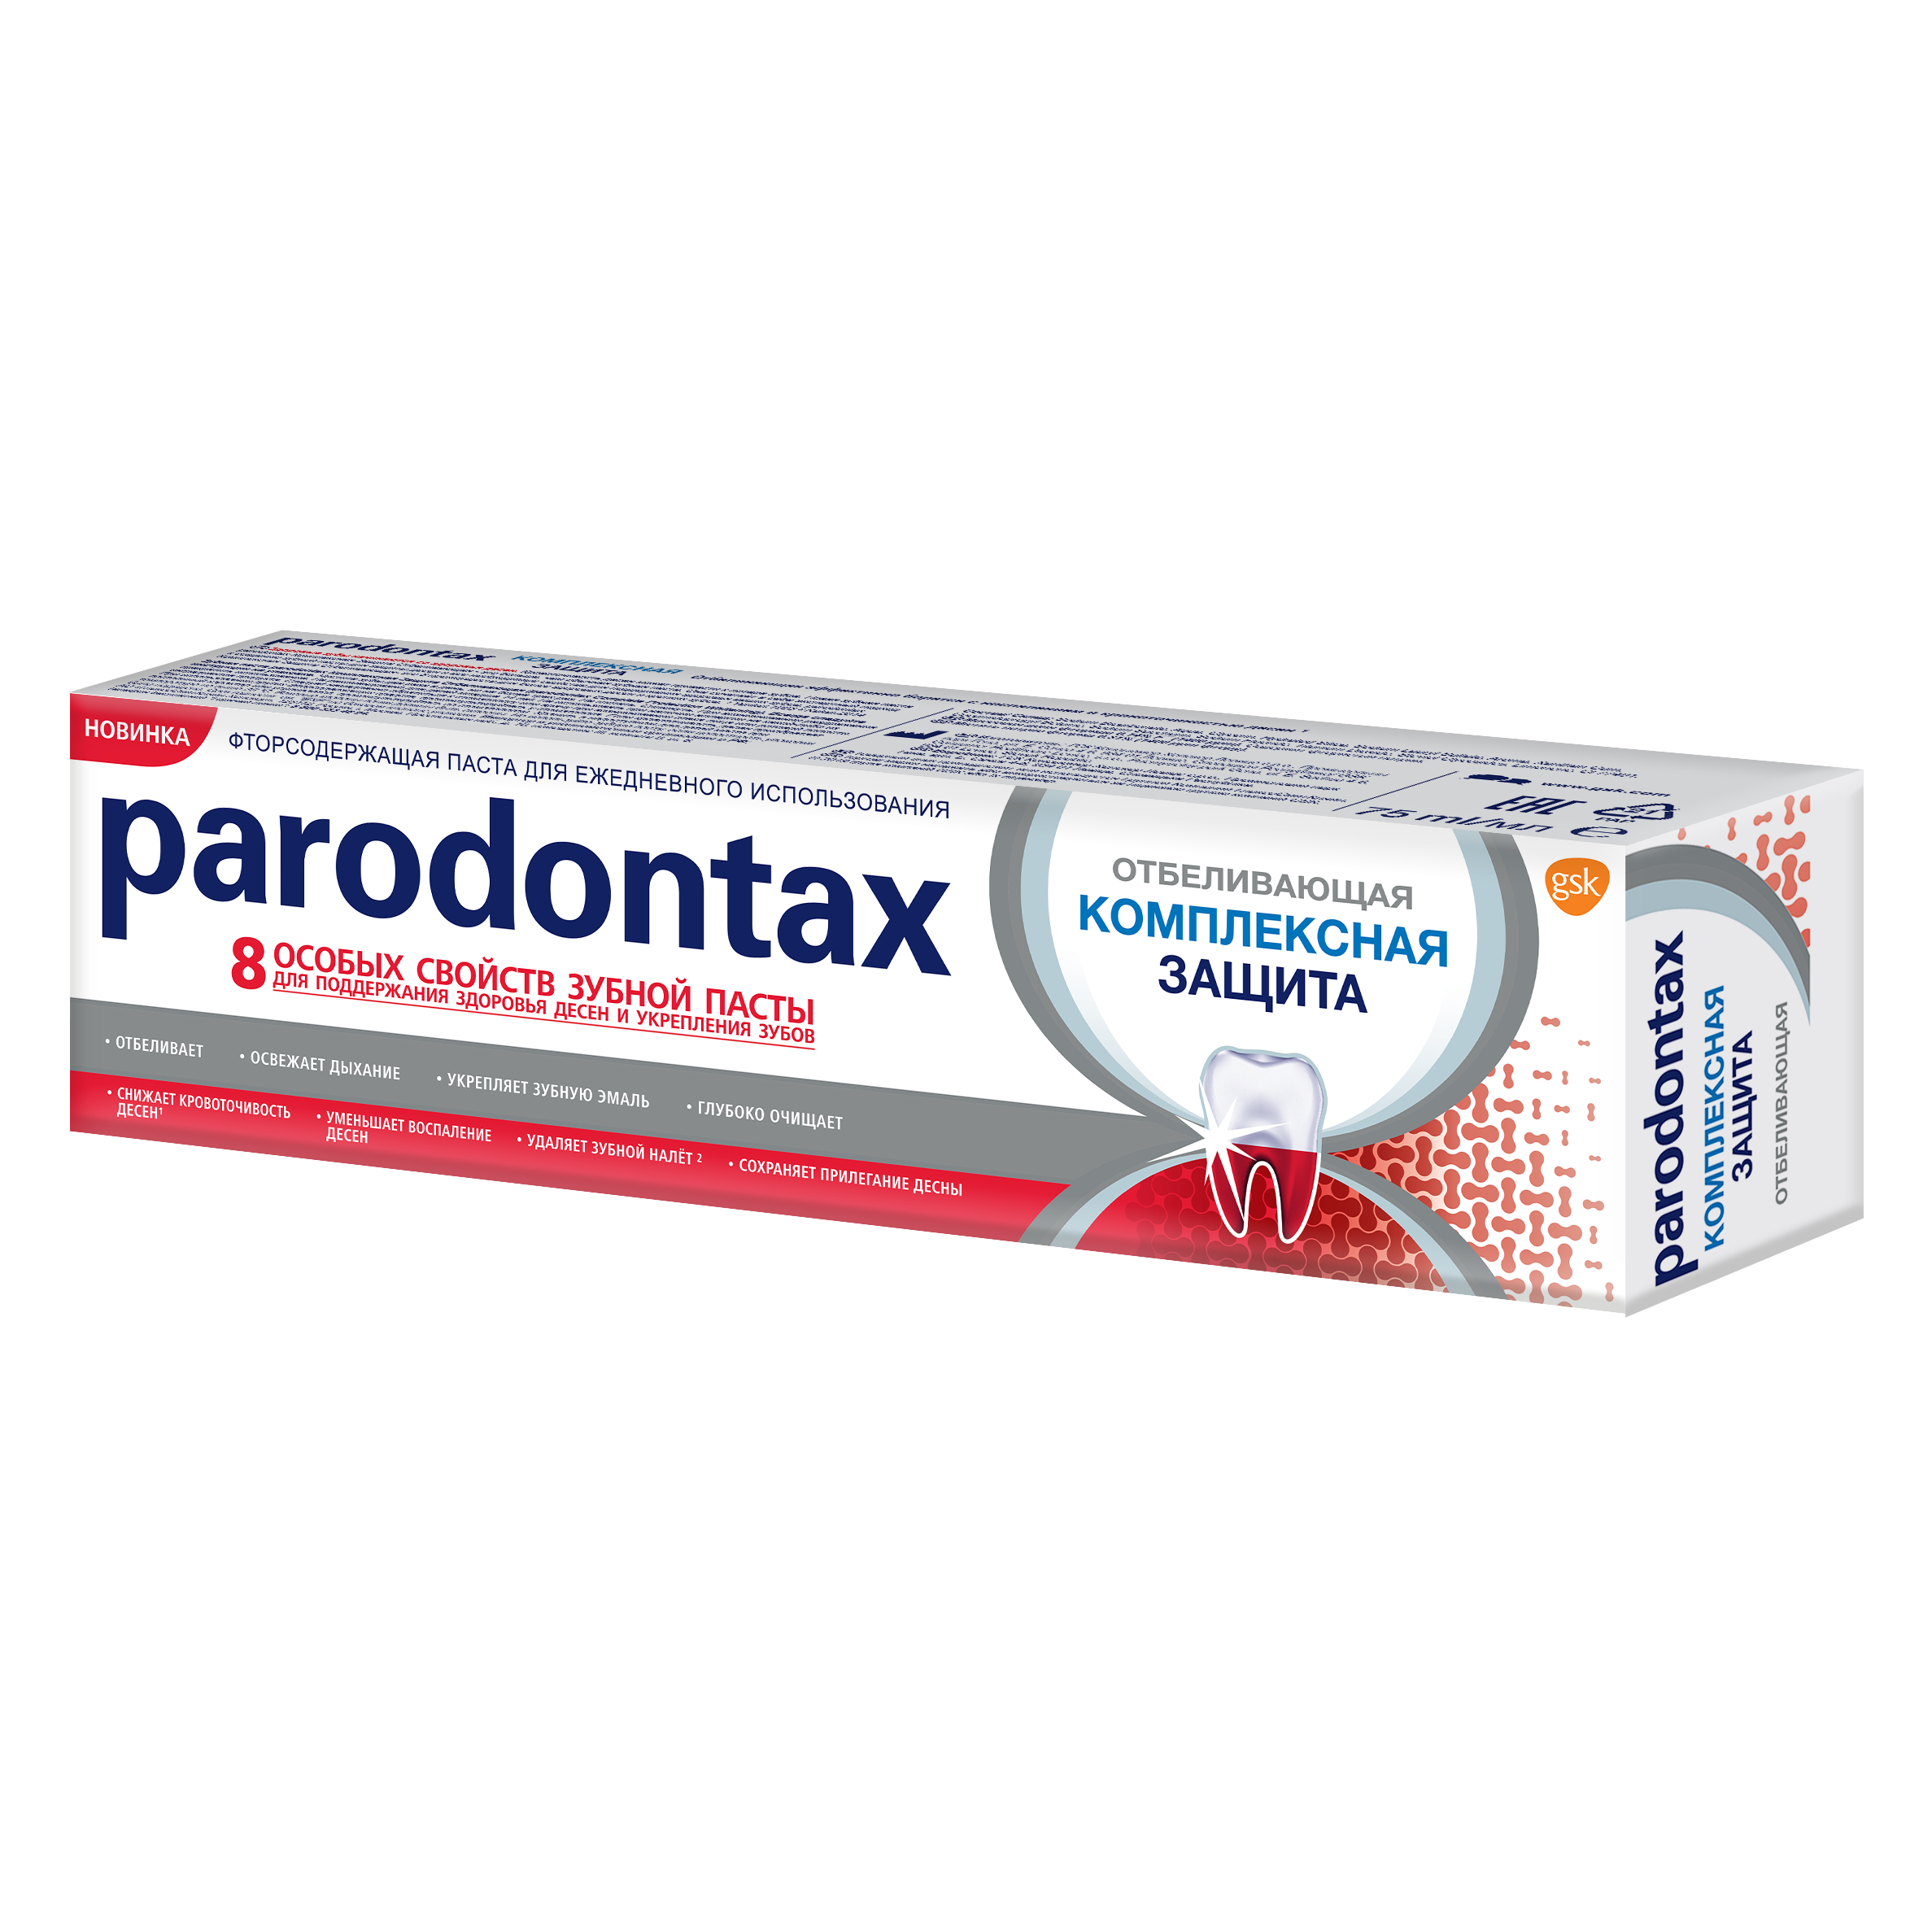 Зубная паста Parodontax Комплексная защита Отбеливающая, 75 мл - фото 5